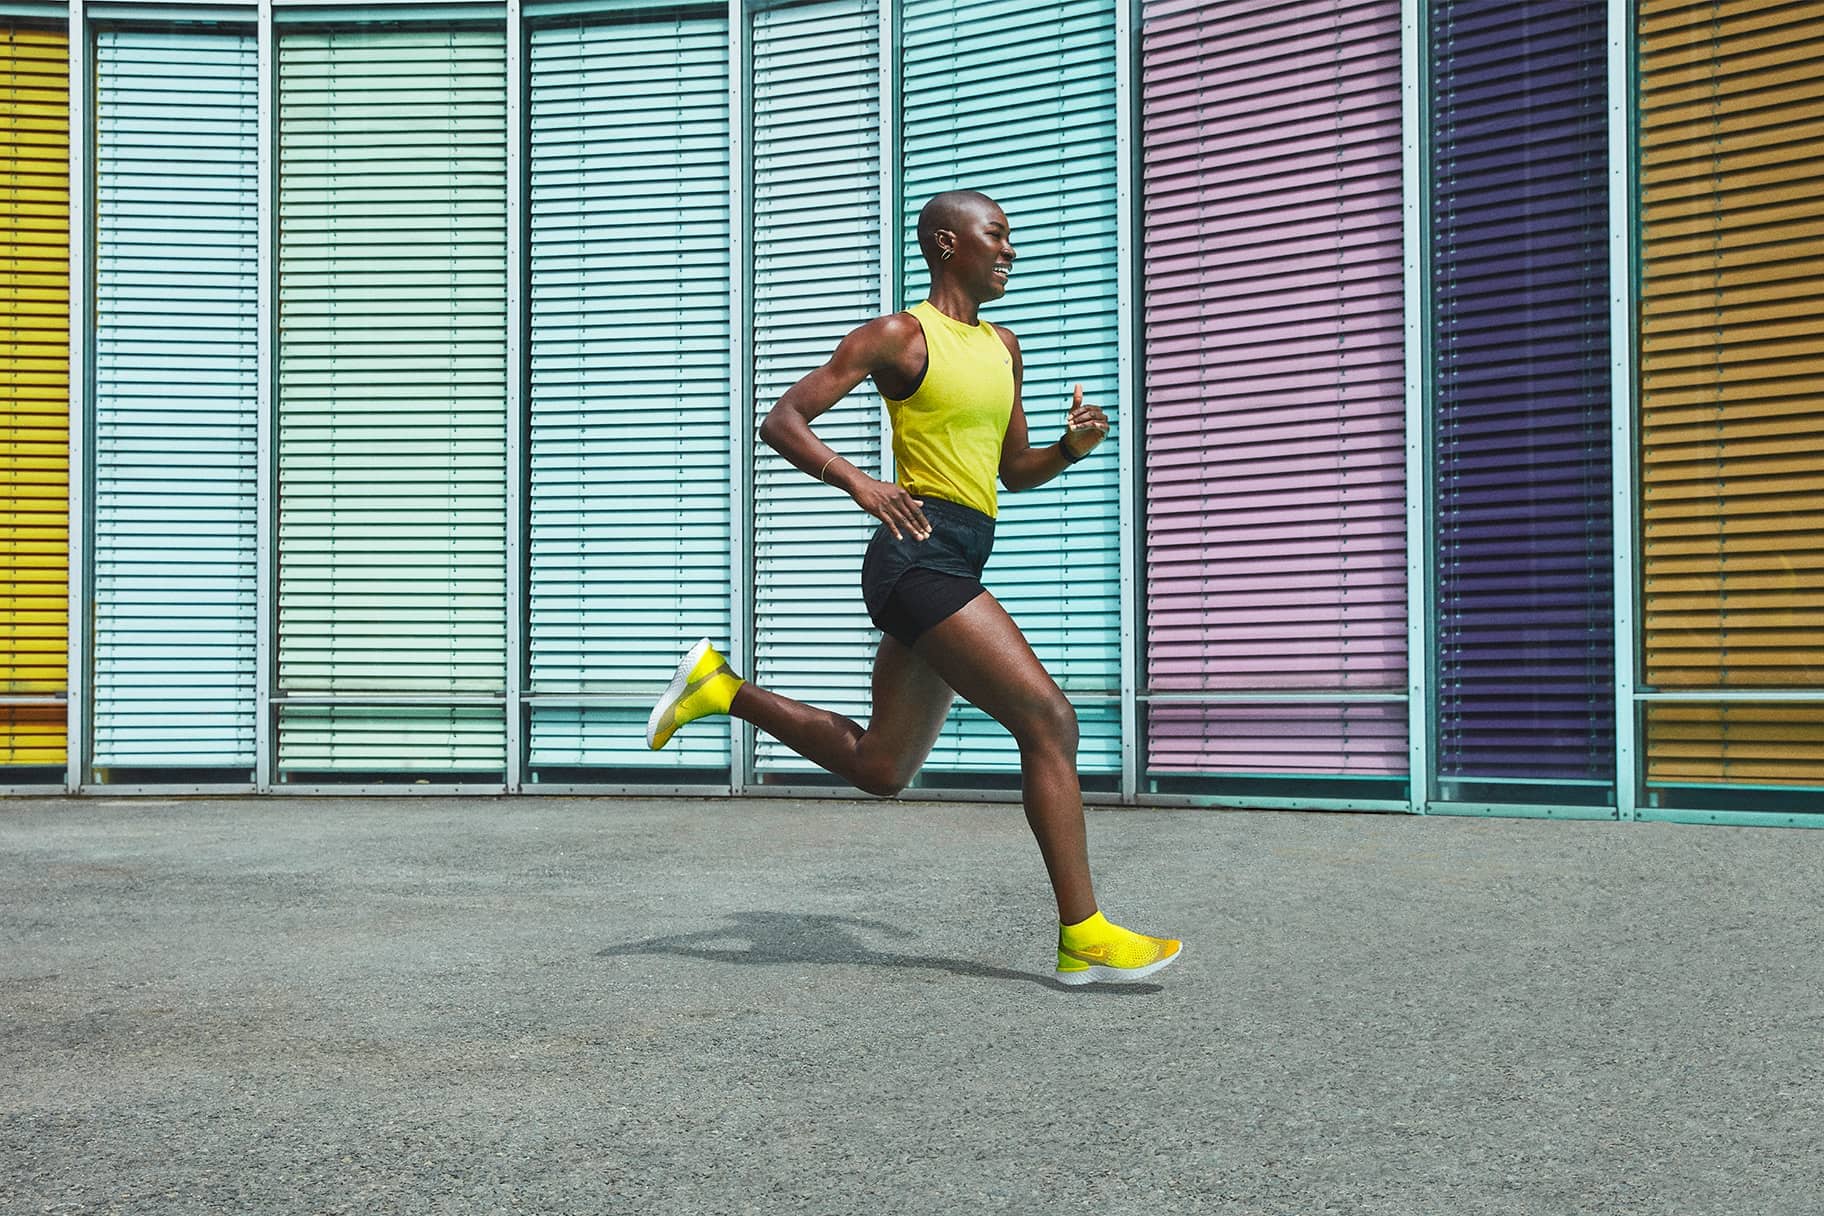 Men's Lightweight Performance Running Shoes